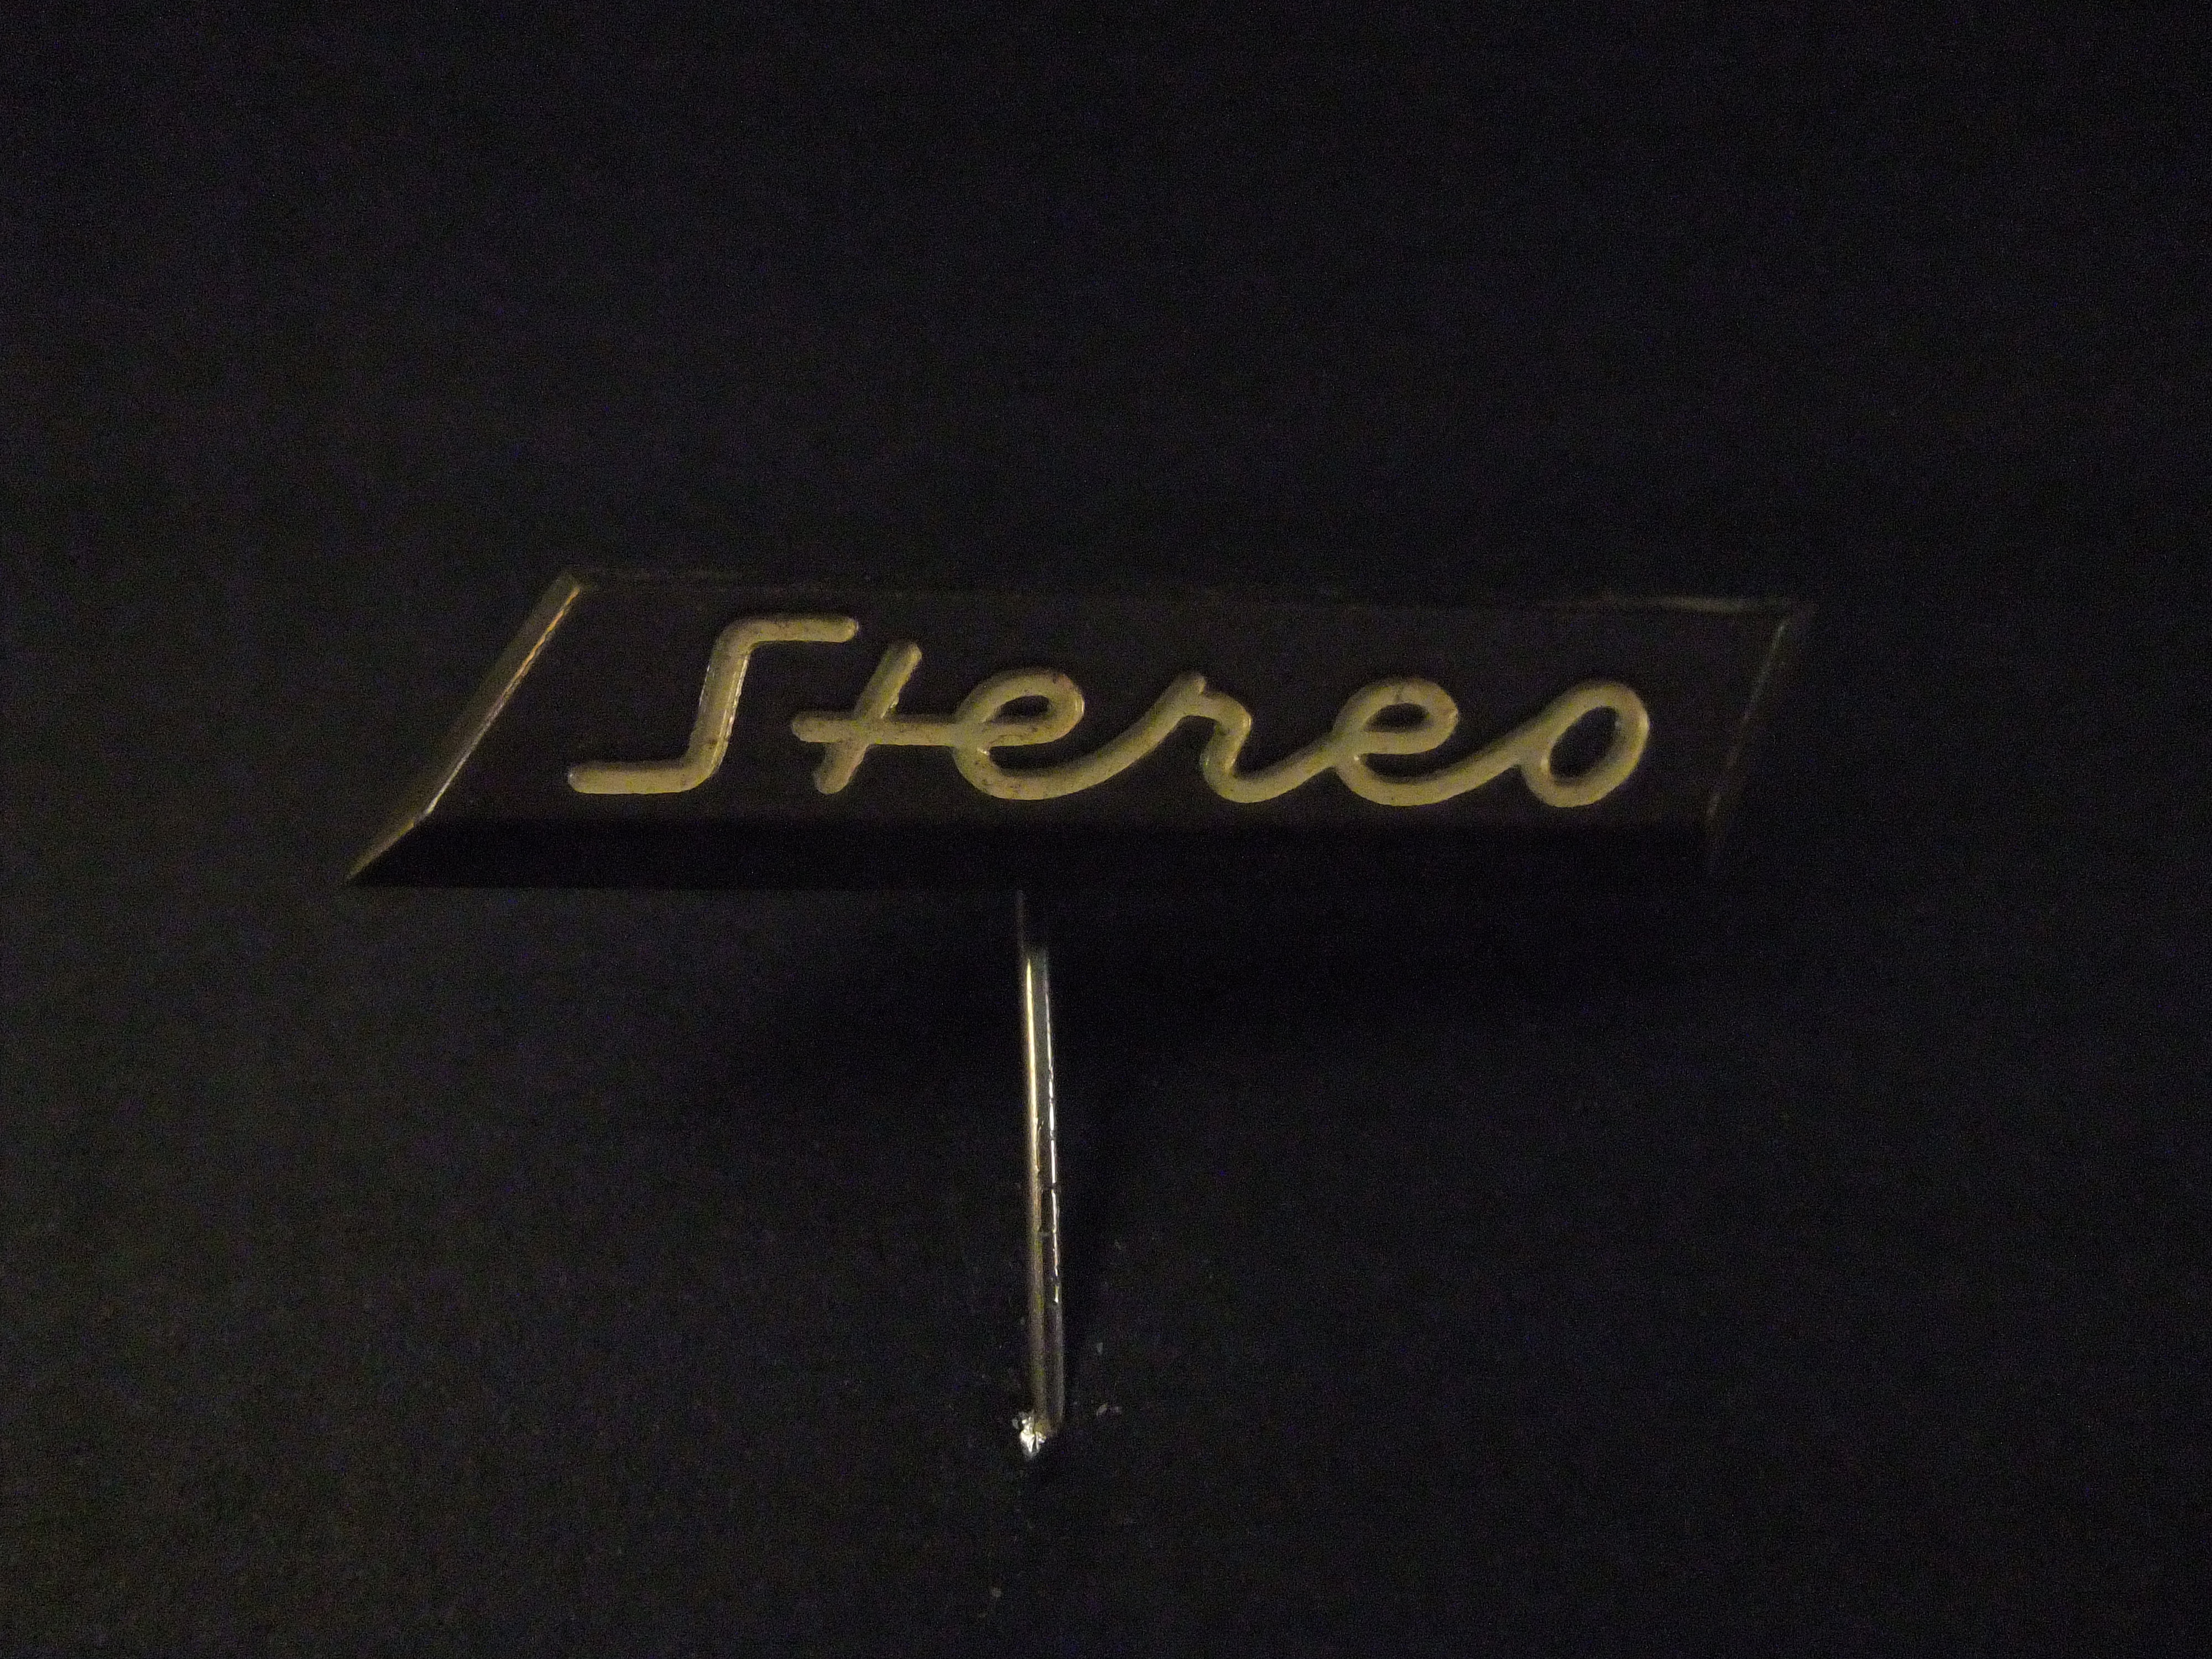 Stereo ( logo)